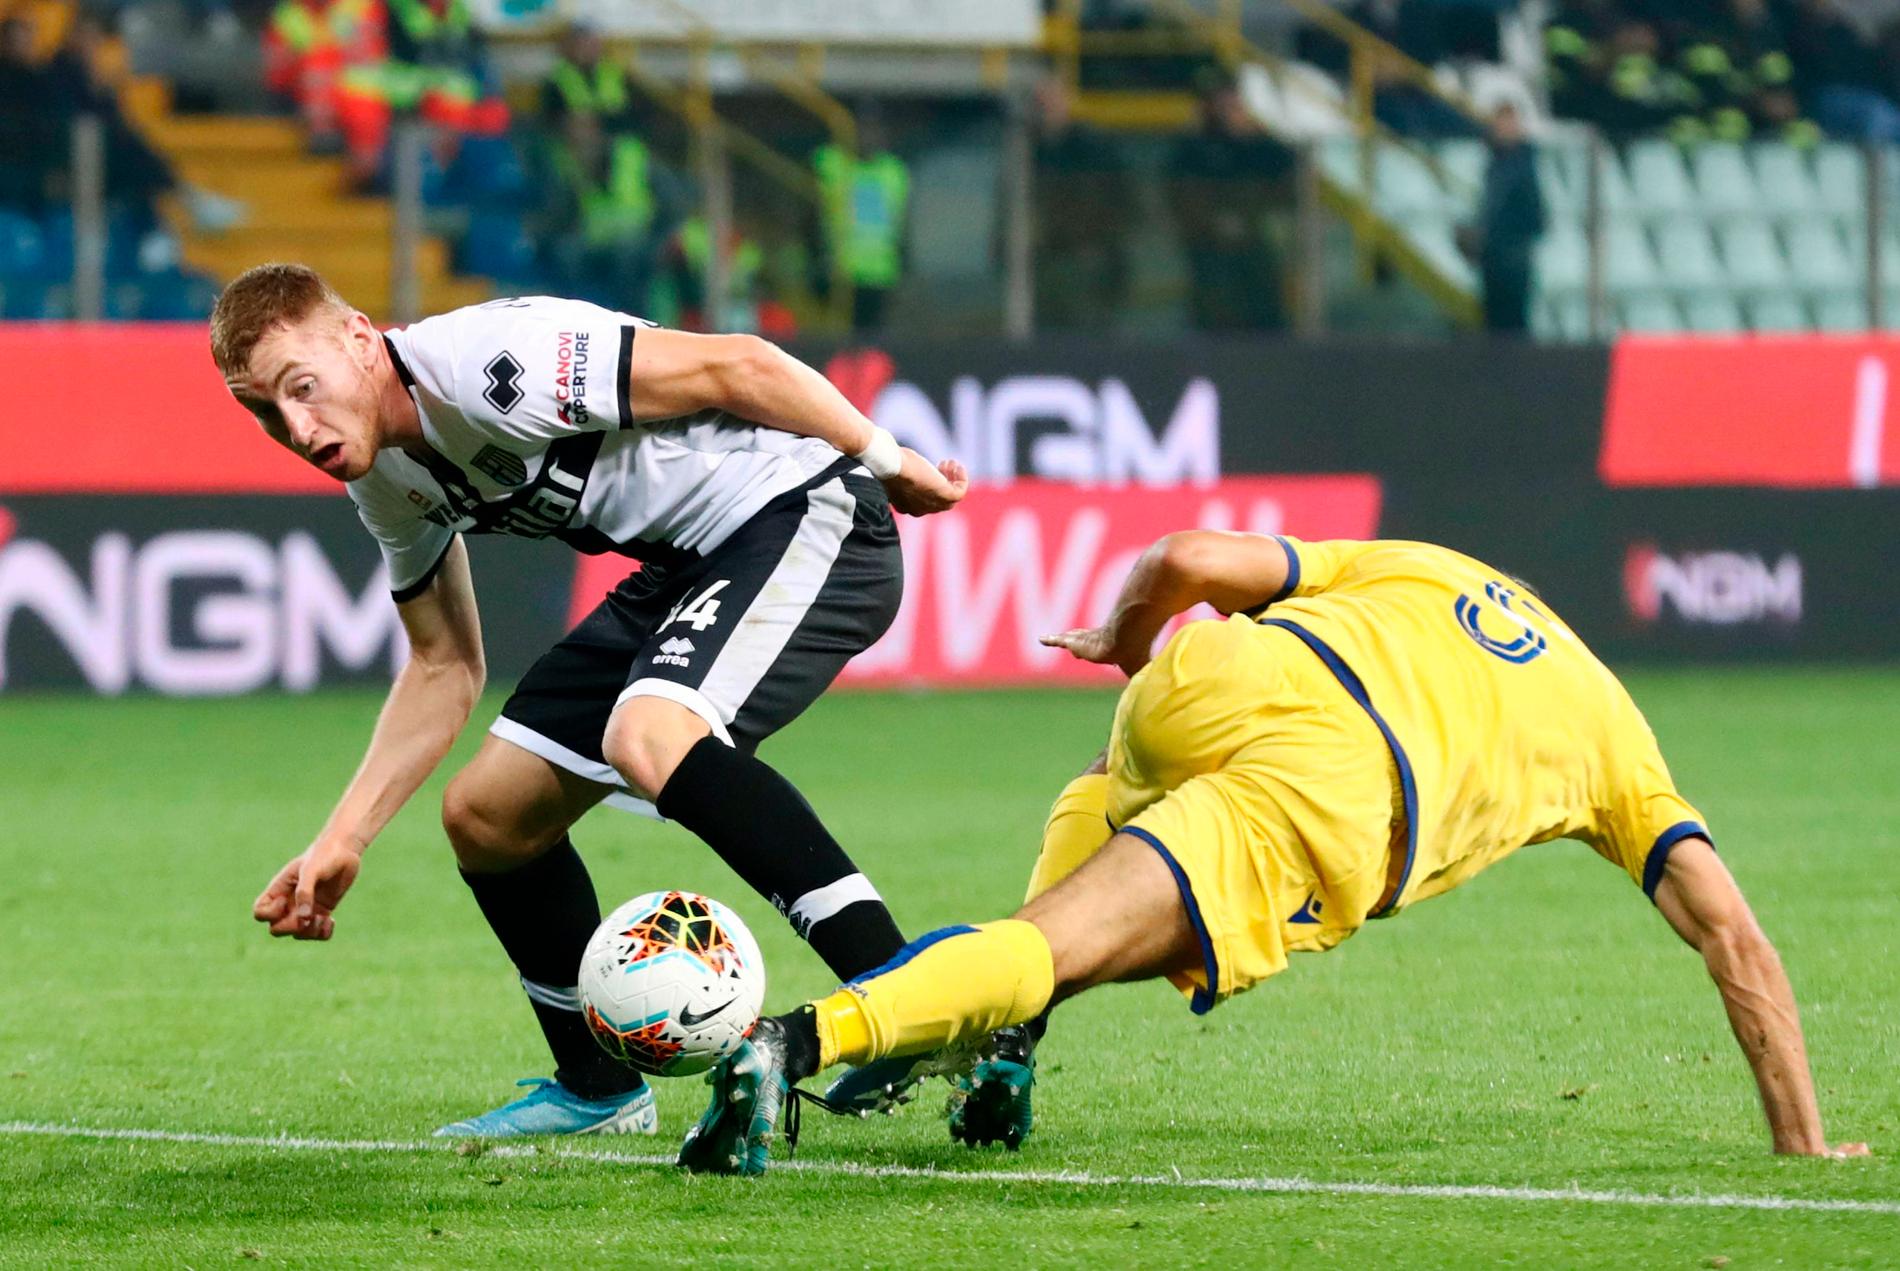 Flera matcher i Serie A ställs in på grund av viruset. Bland annat berörs en match med Parma, där svenske Dejan Kulusevski spelar.